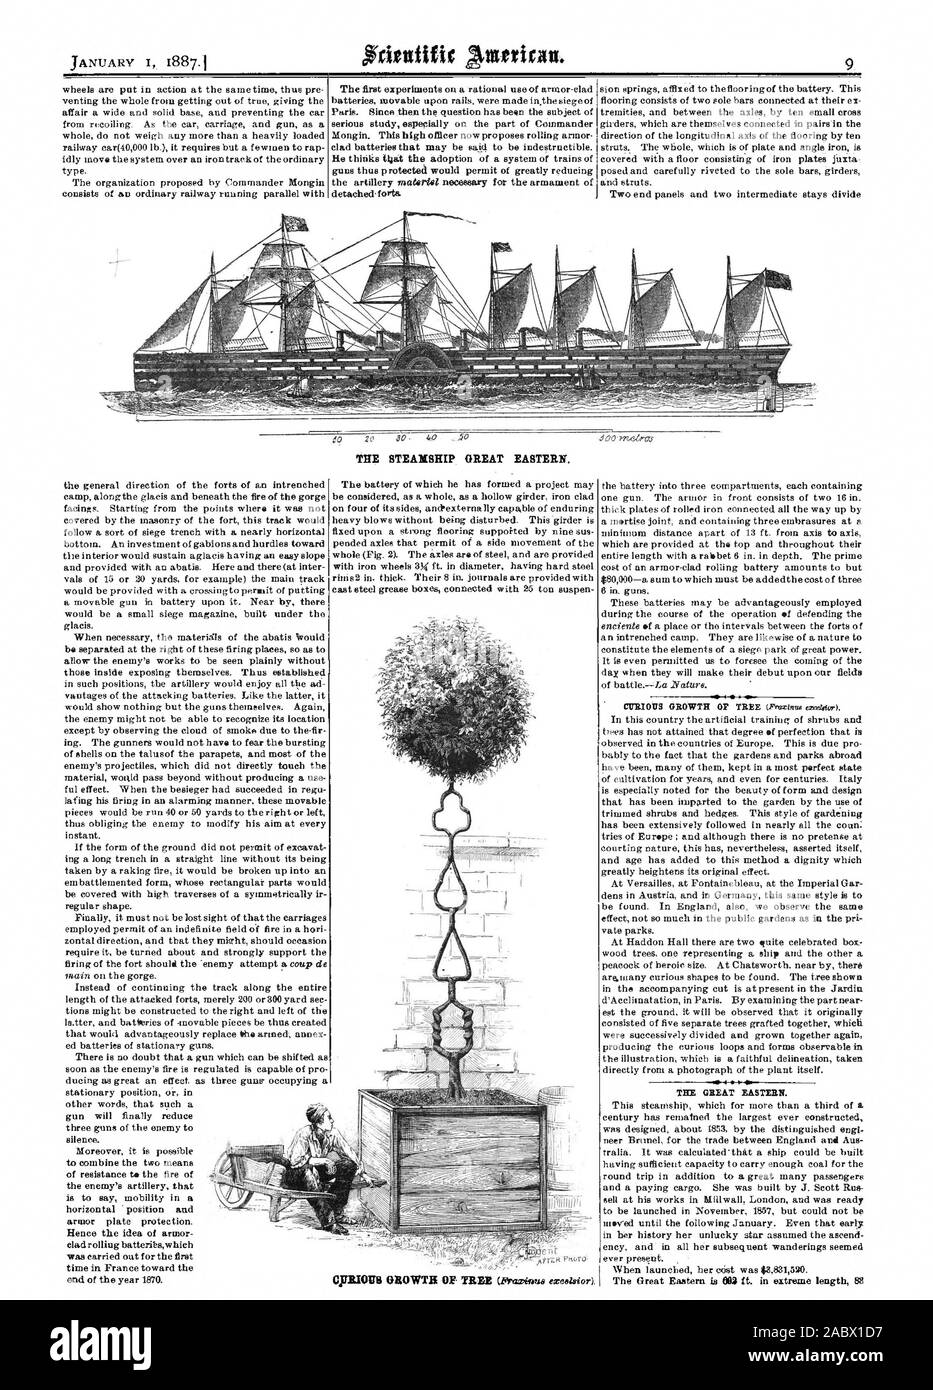 El vapor Great Eastern, Scientific American, 1887-01-01 Foto de stock